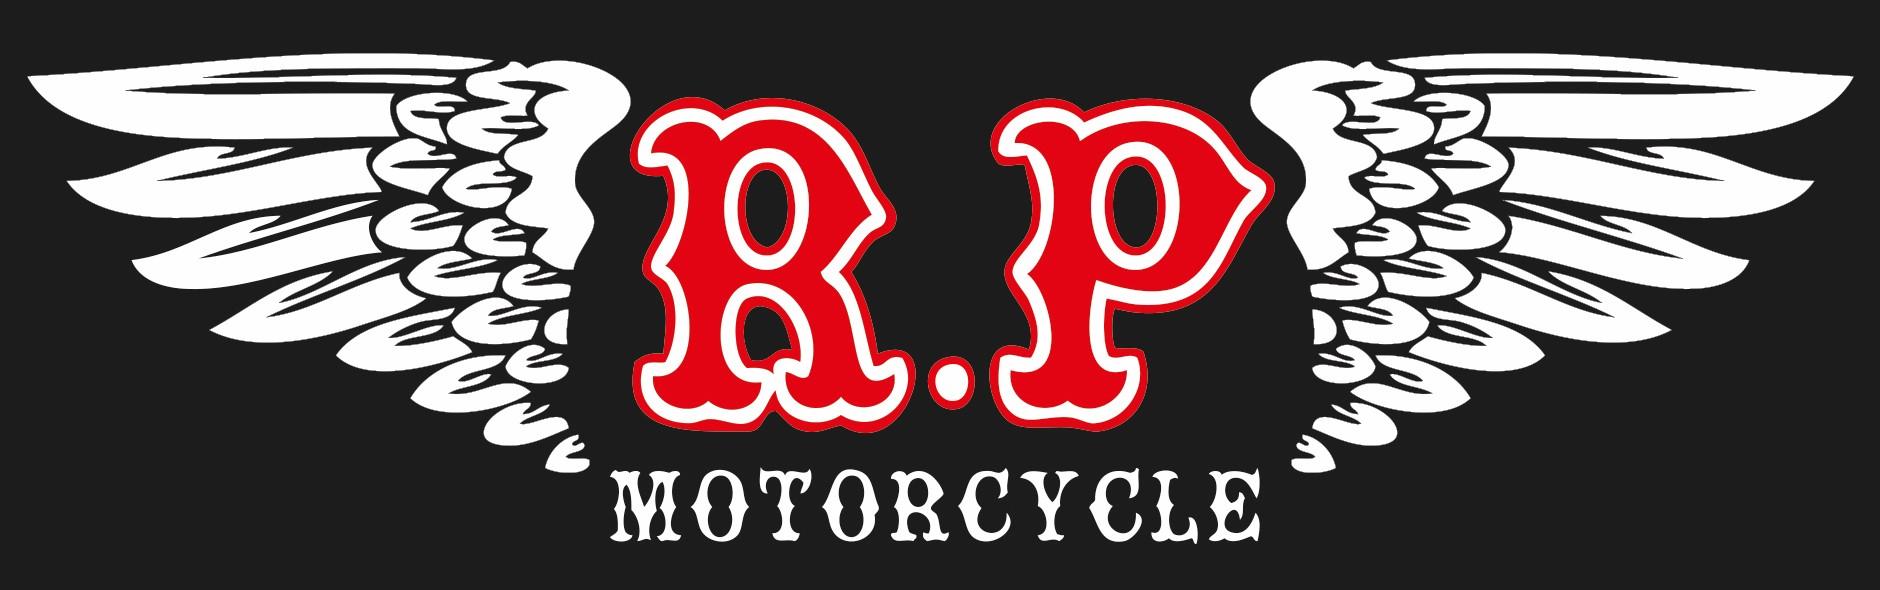 <img ="logo_rp.png" alt=" logo rp motorcycle trasporto moto">